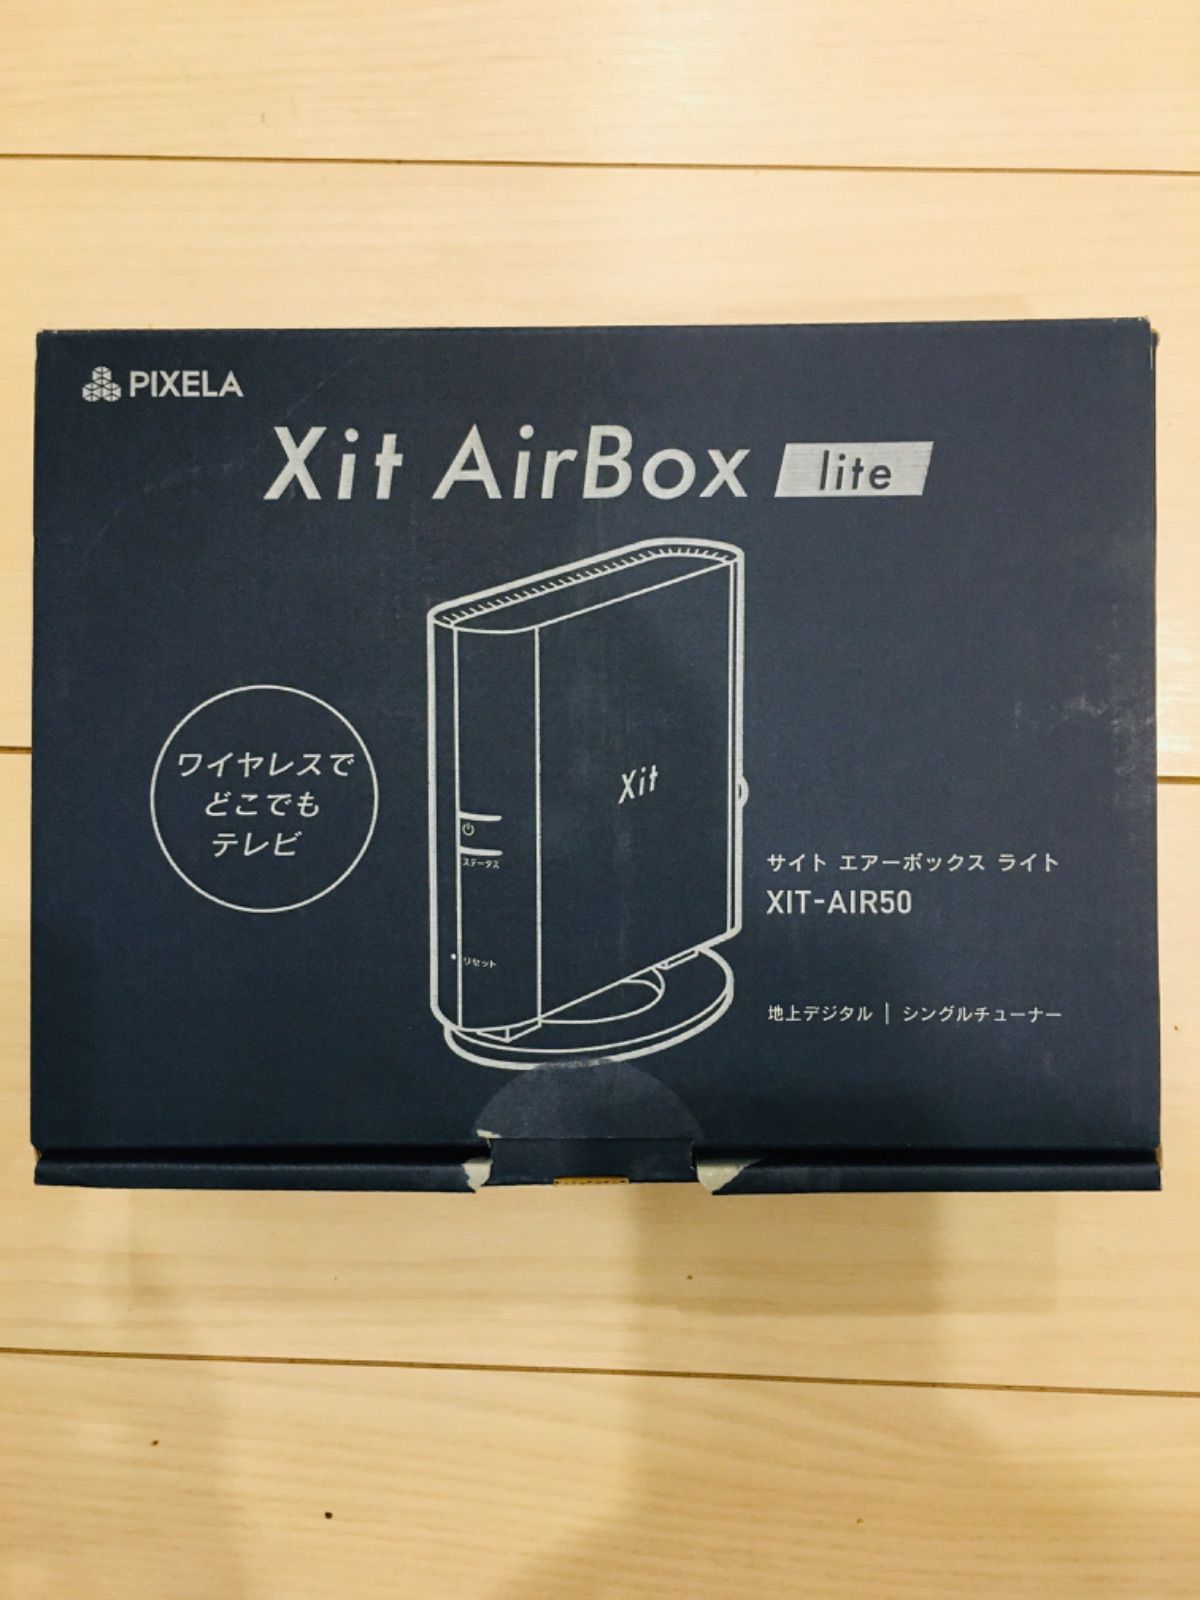 ピクセラ テレビチューナー Xit AirBox サイト・エアーボックス XIT